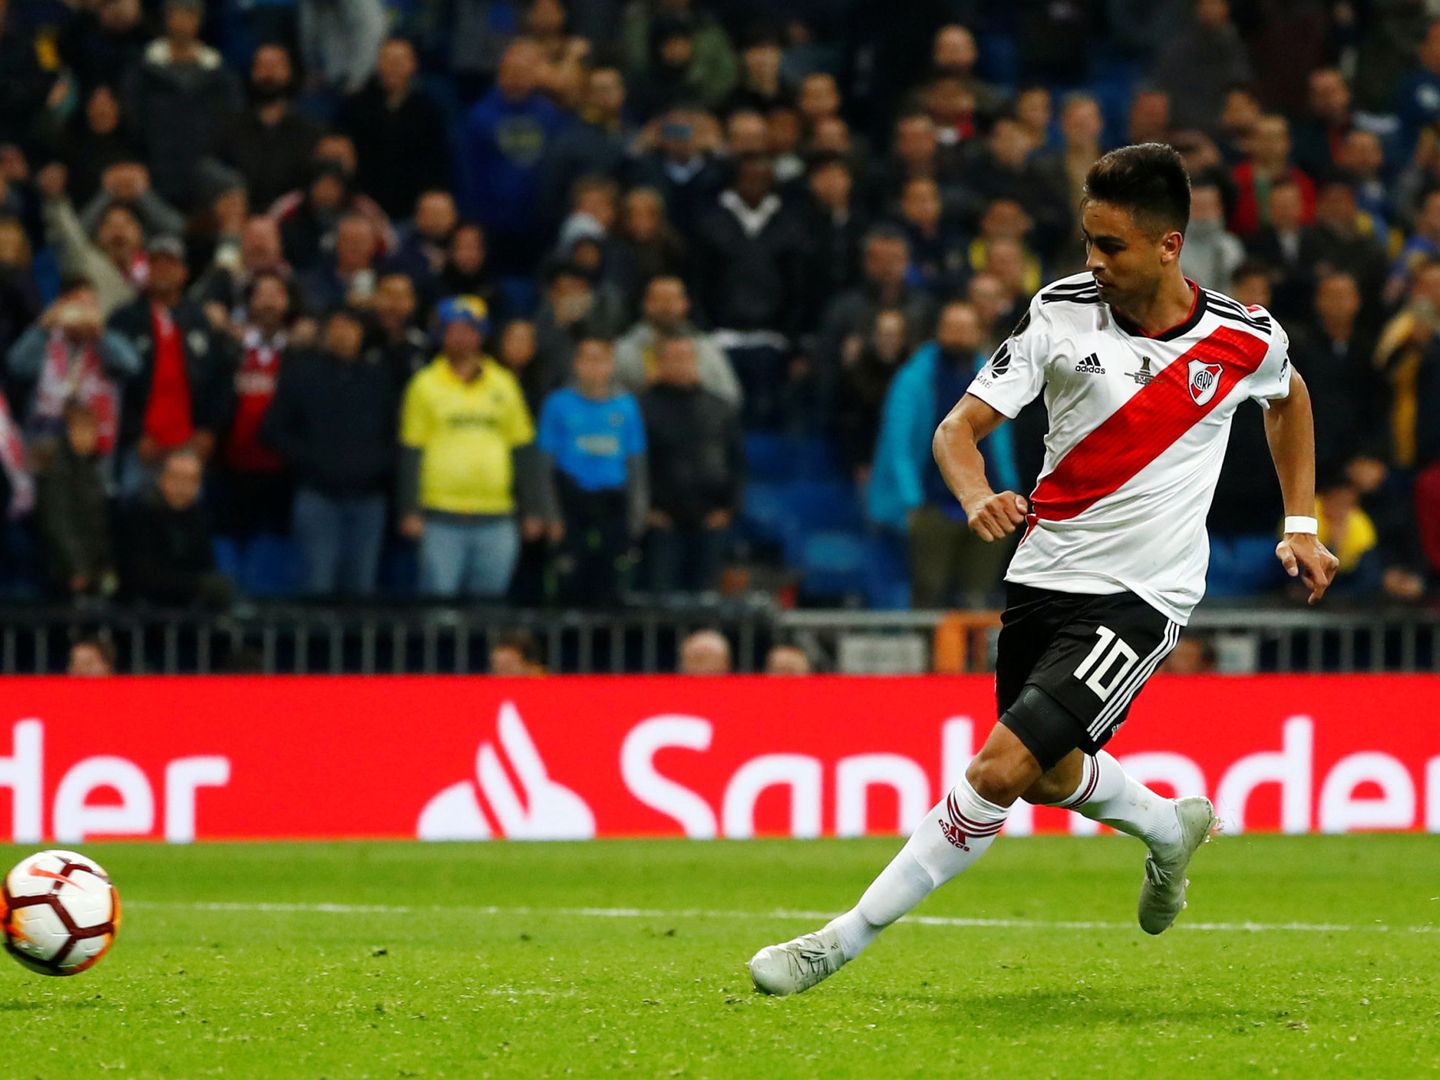 El Piti Martínez marcó el tercer gol de River. (Reuters)